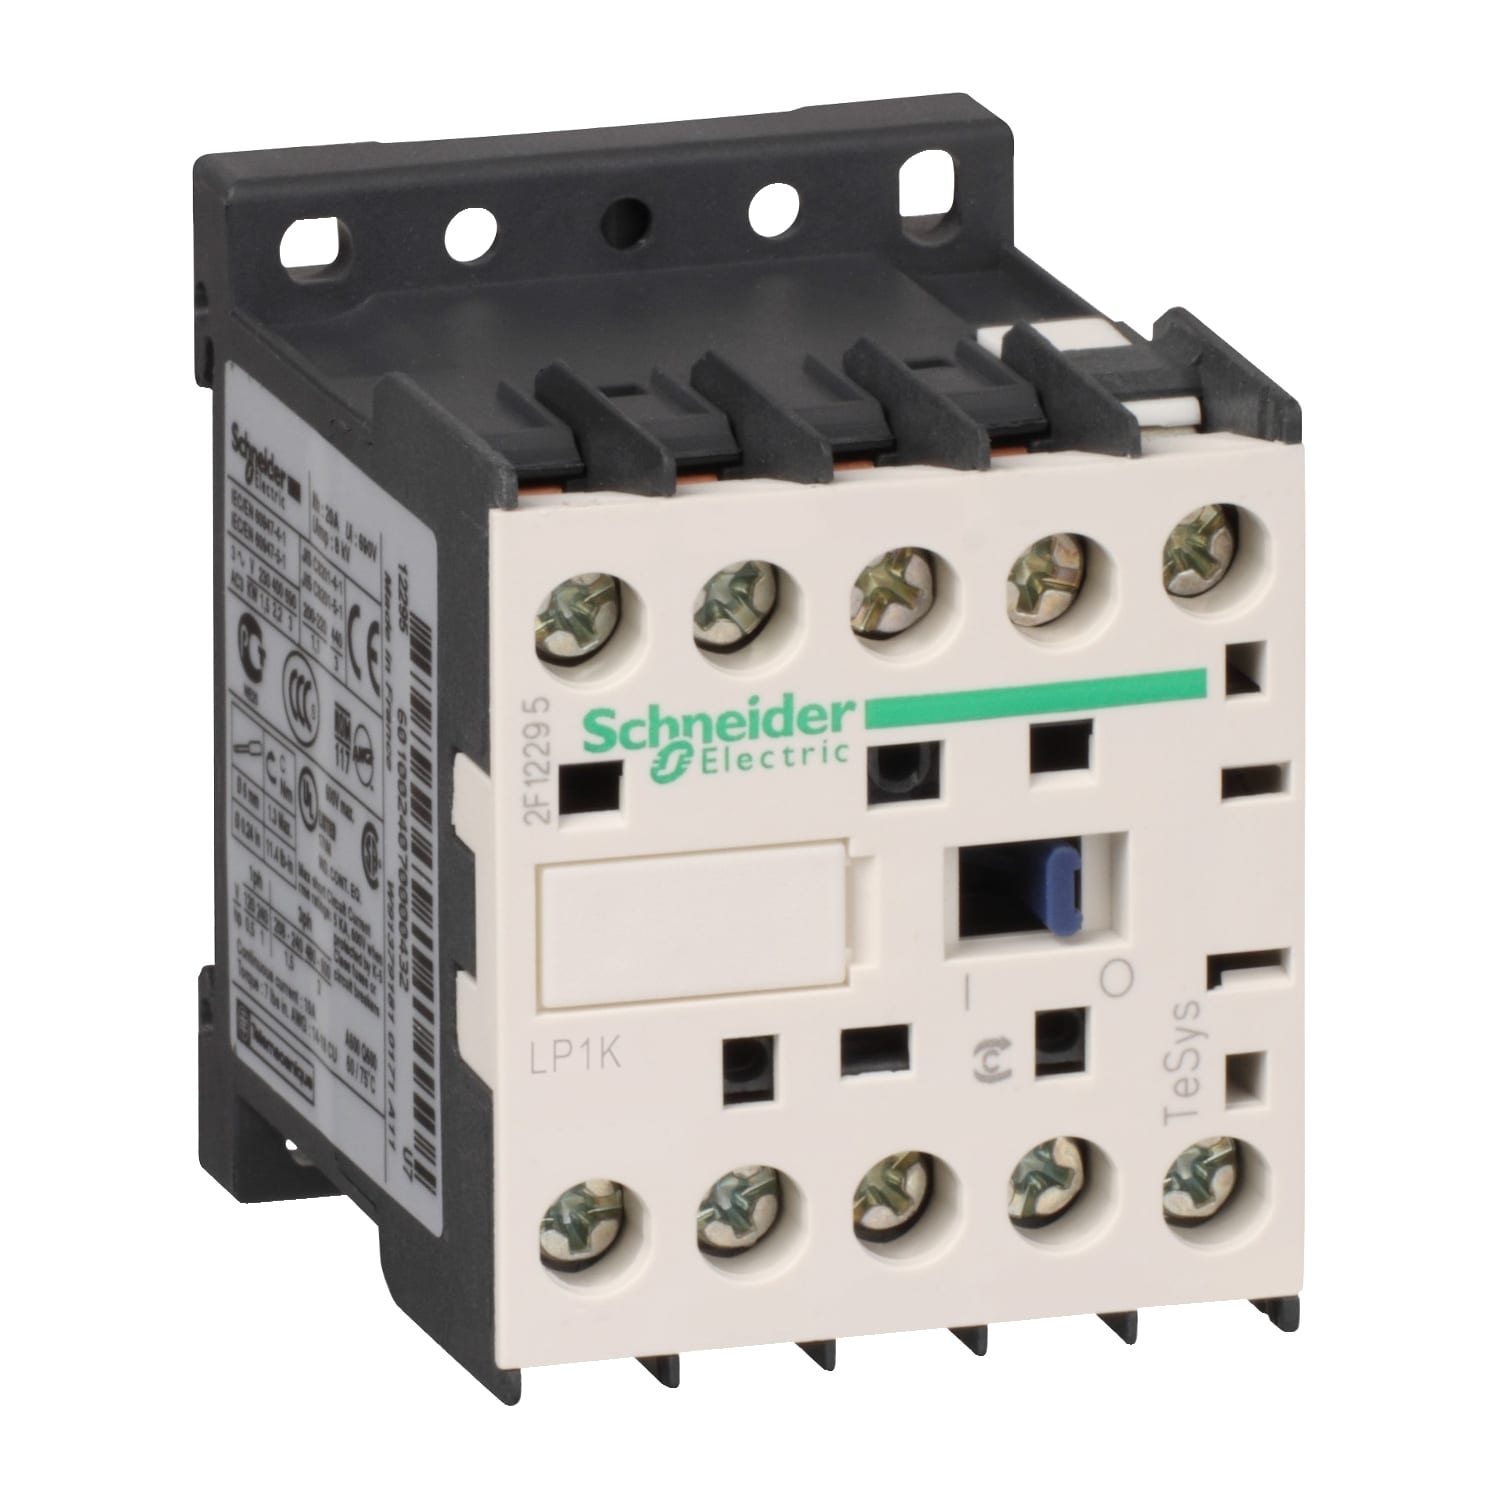 Schneider Electric - TeSys LP1K - contacteur - 4P - AC-1 440V - 20A - bobine 110Vcc